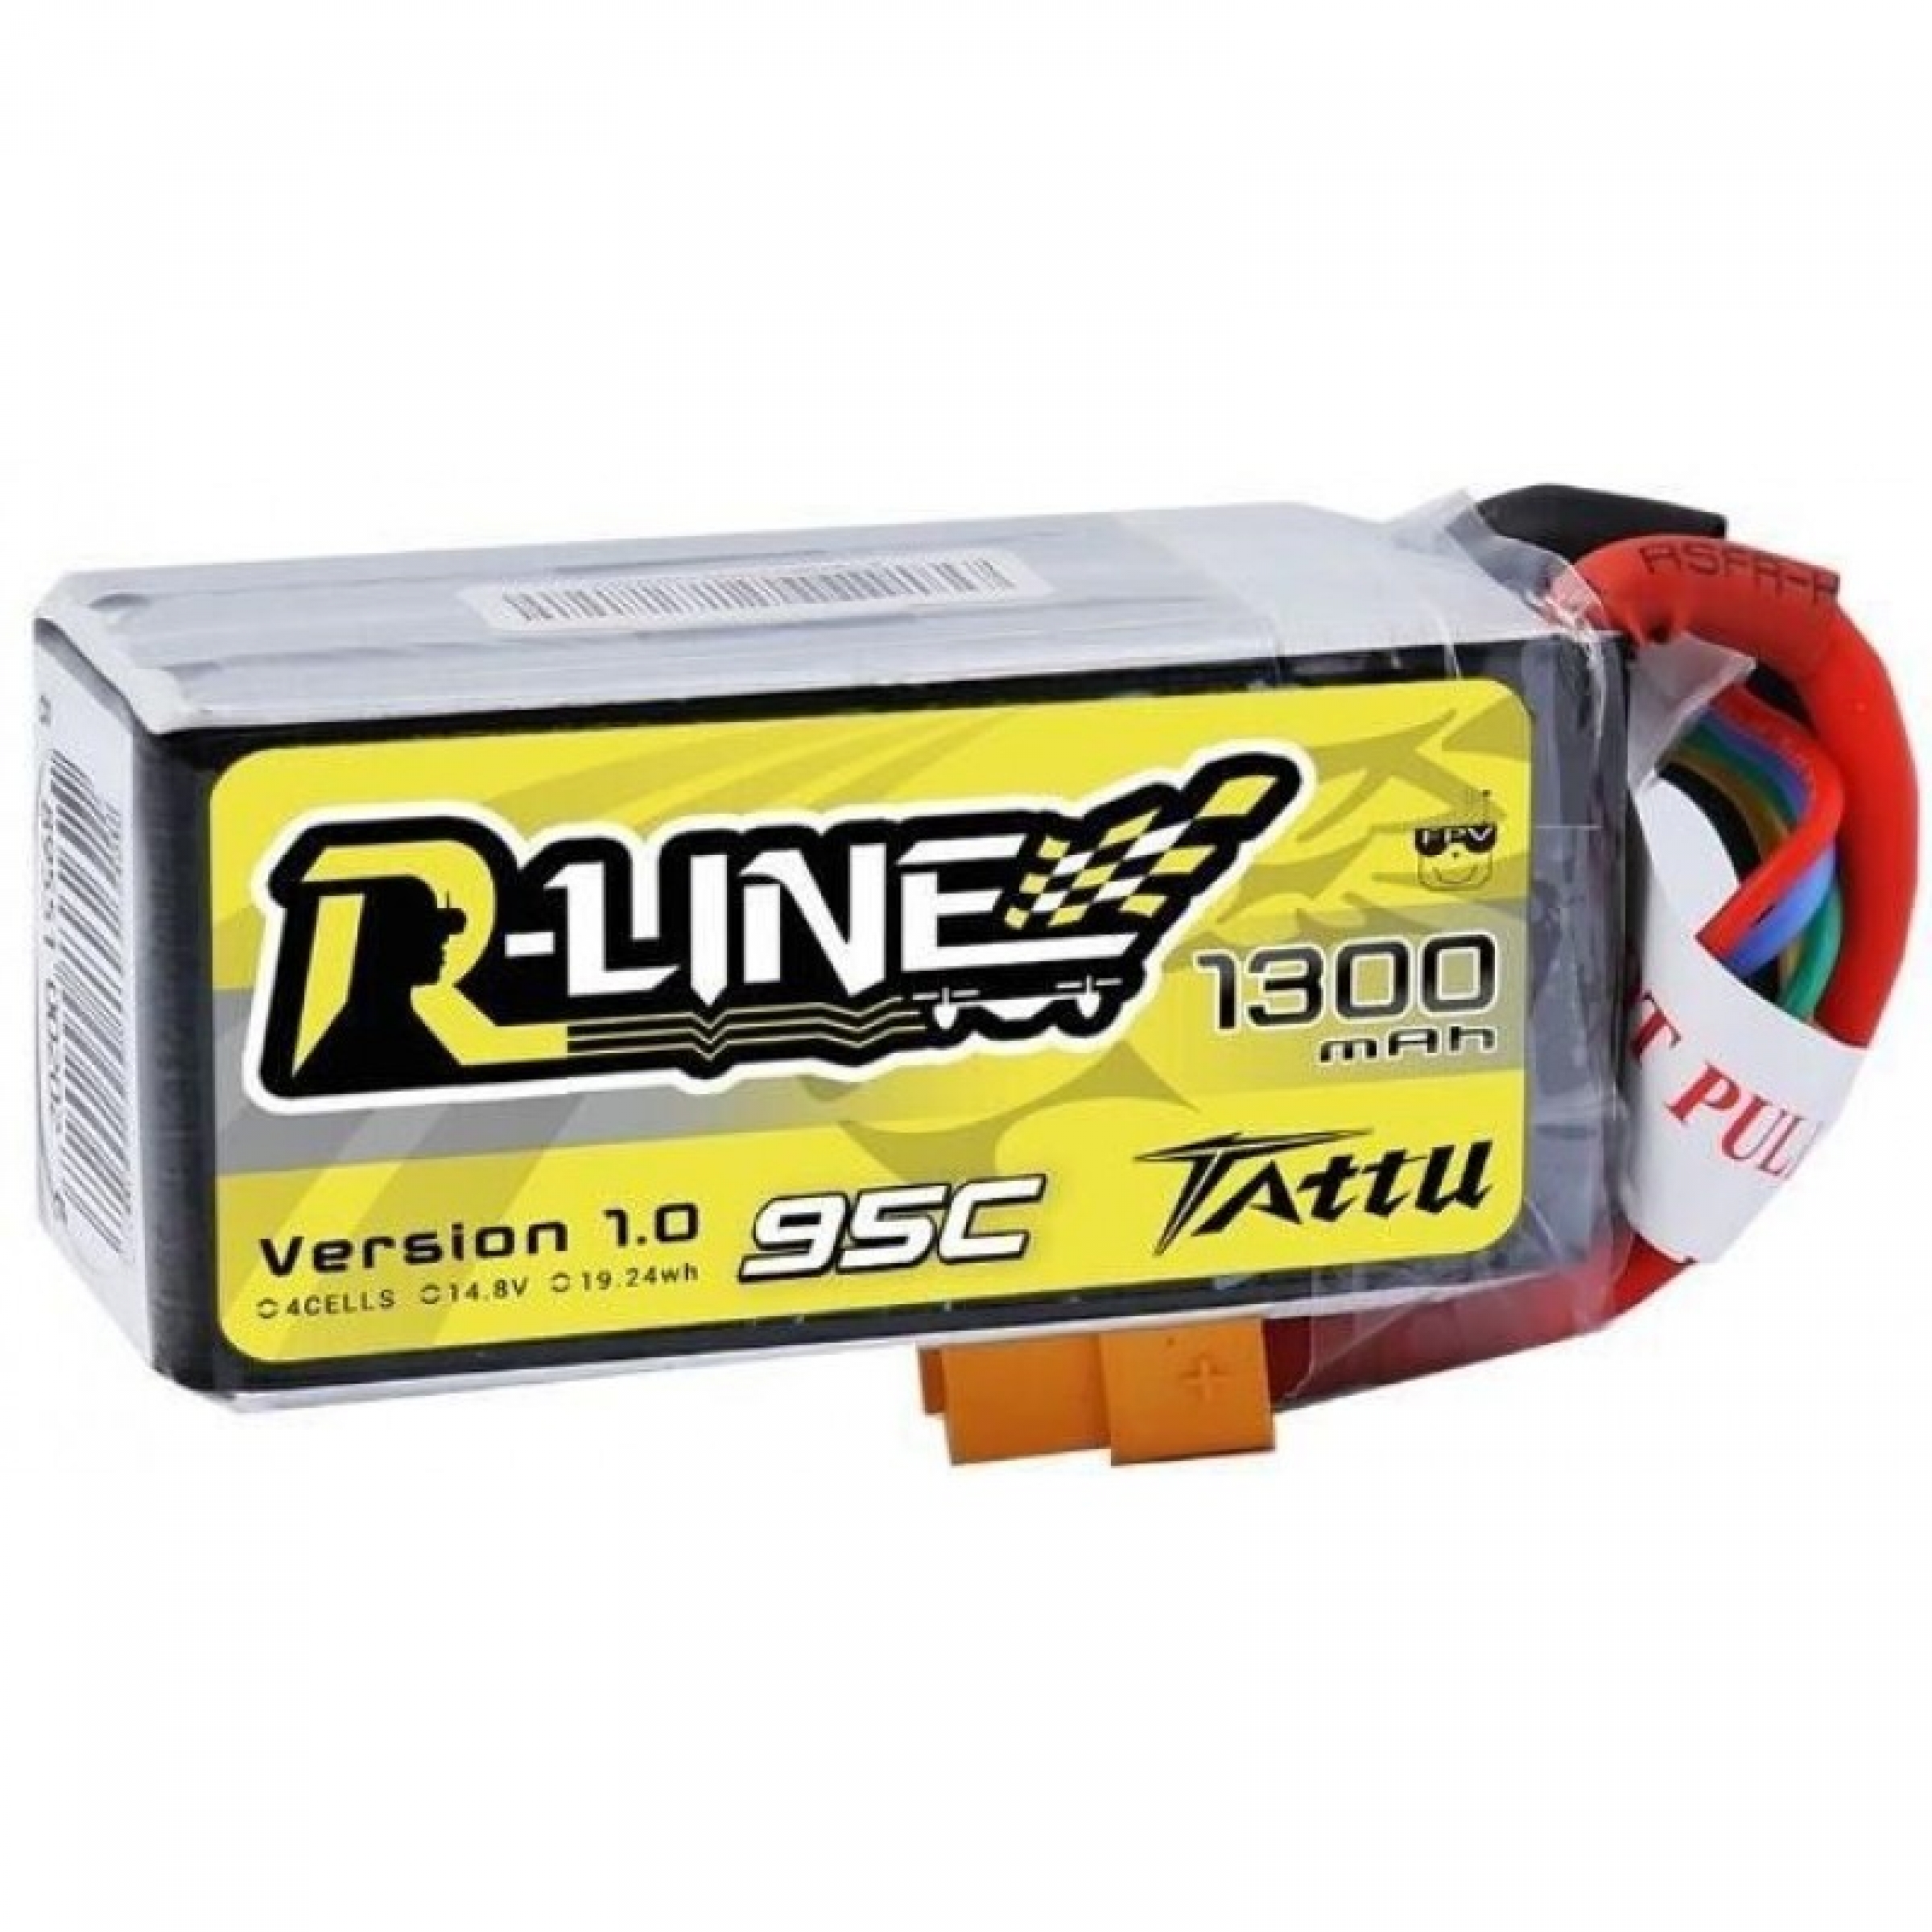 Tattu R-Line 4S 1300mah 95c Lipo Battery Pack with XT60 Plug